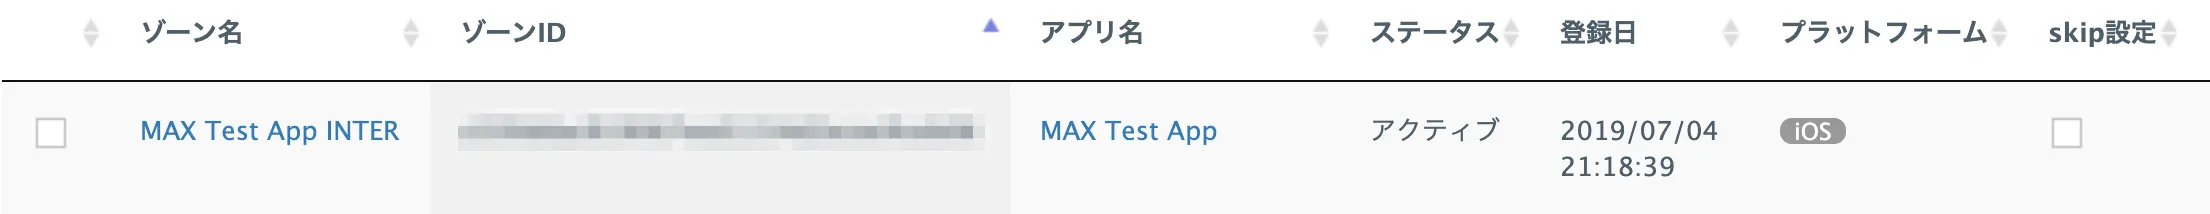 ゾーン名: MAX Test App INTER. アプリ名: MAX Test App. ゾーンID.